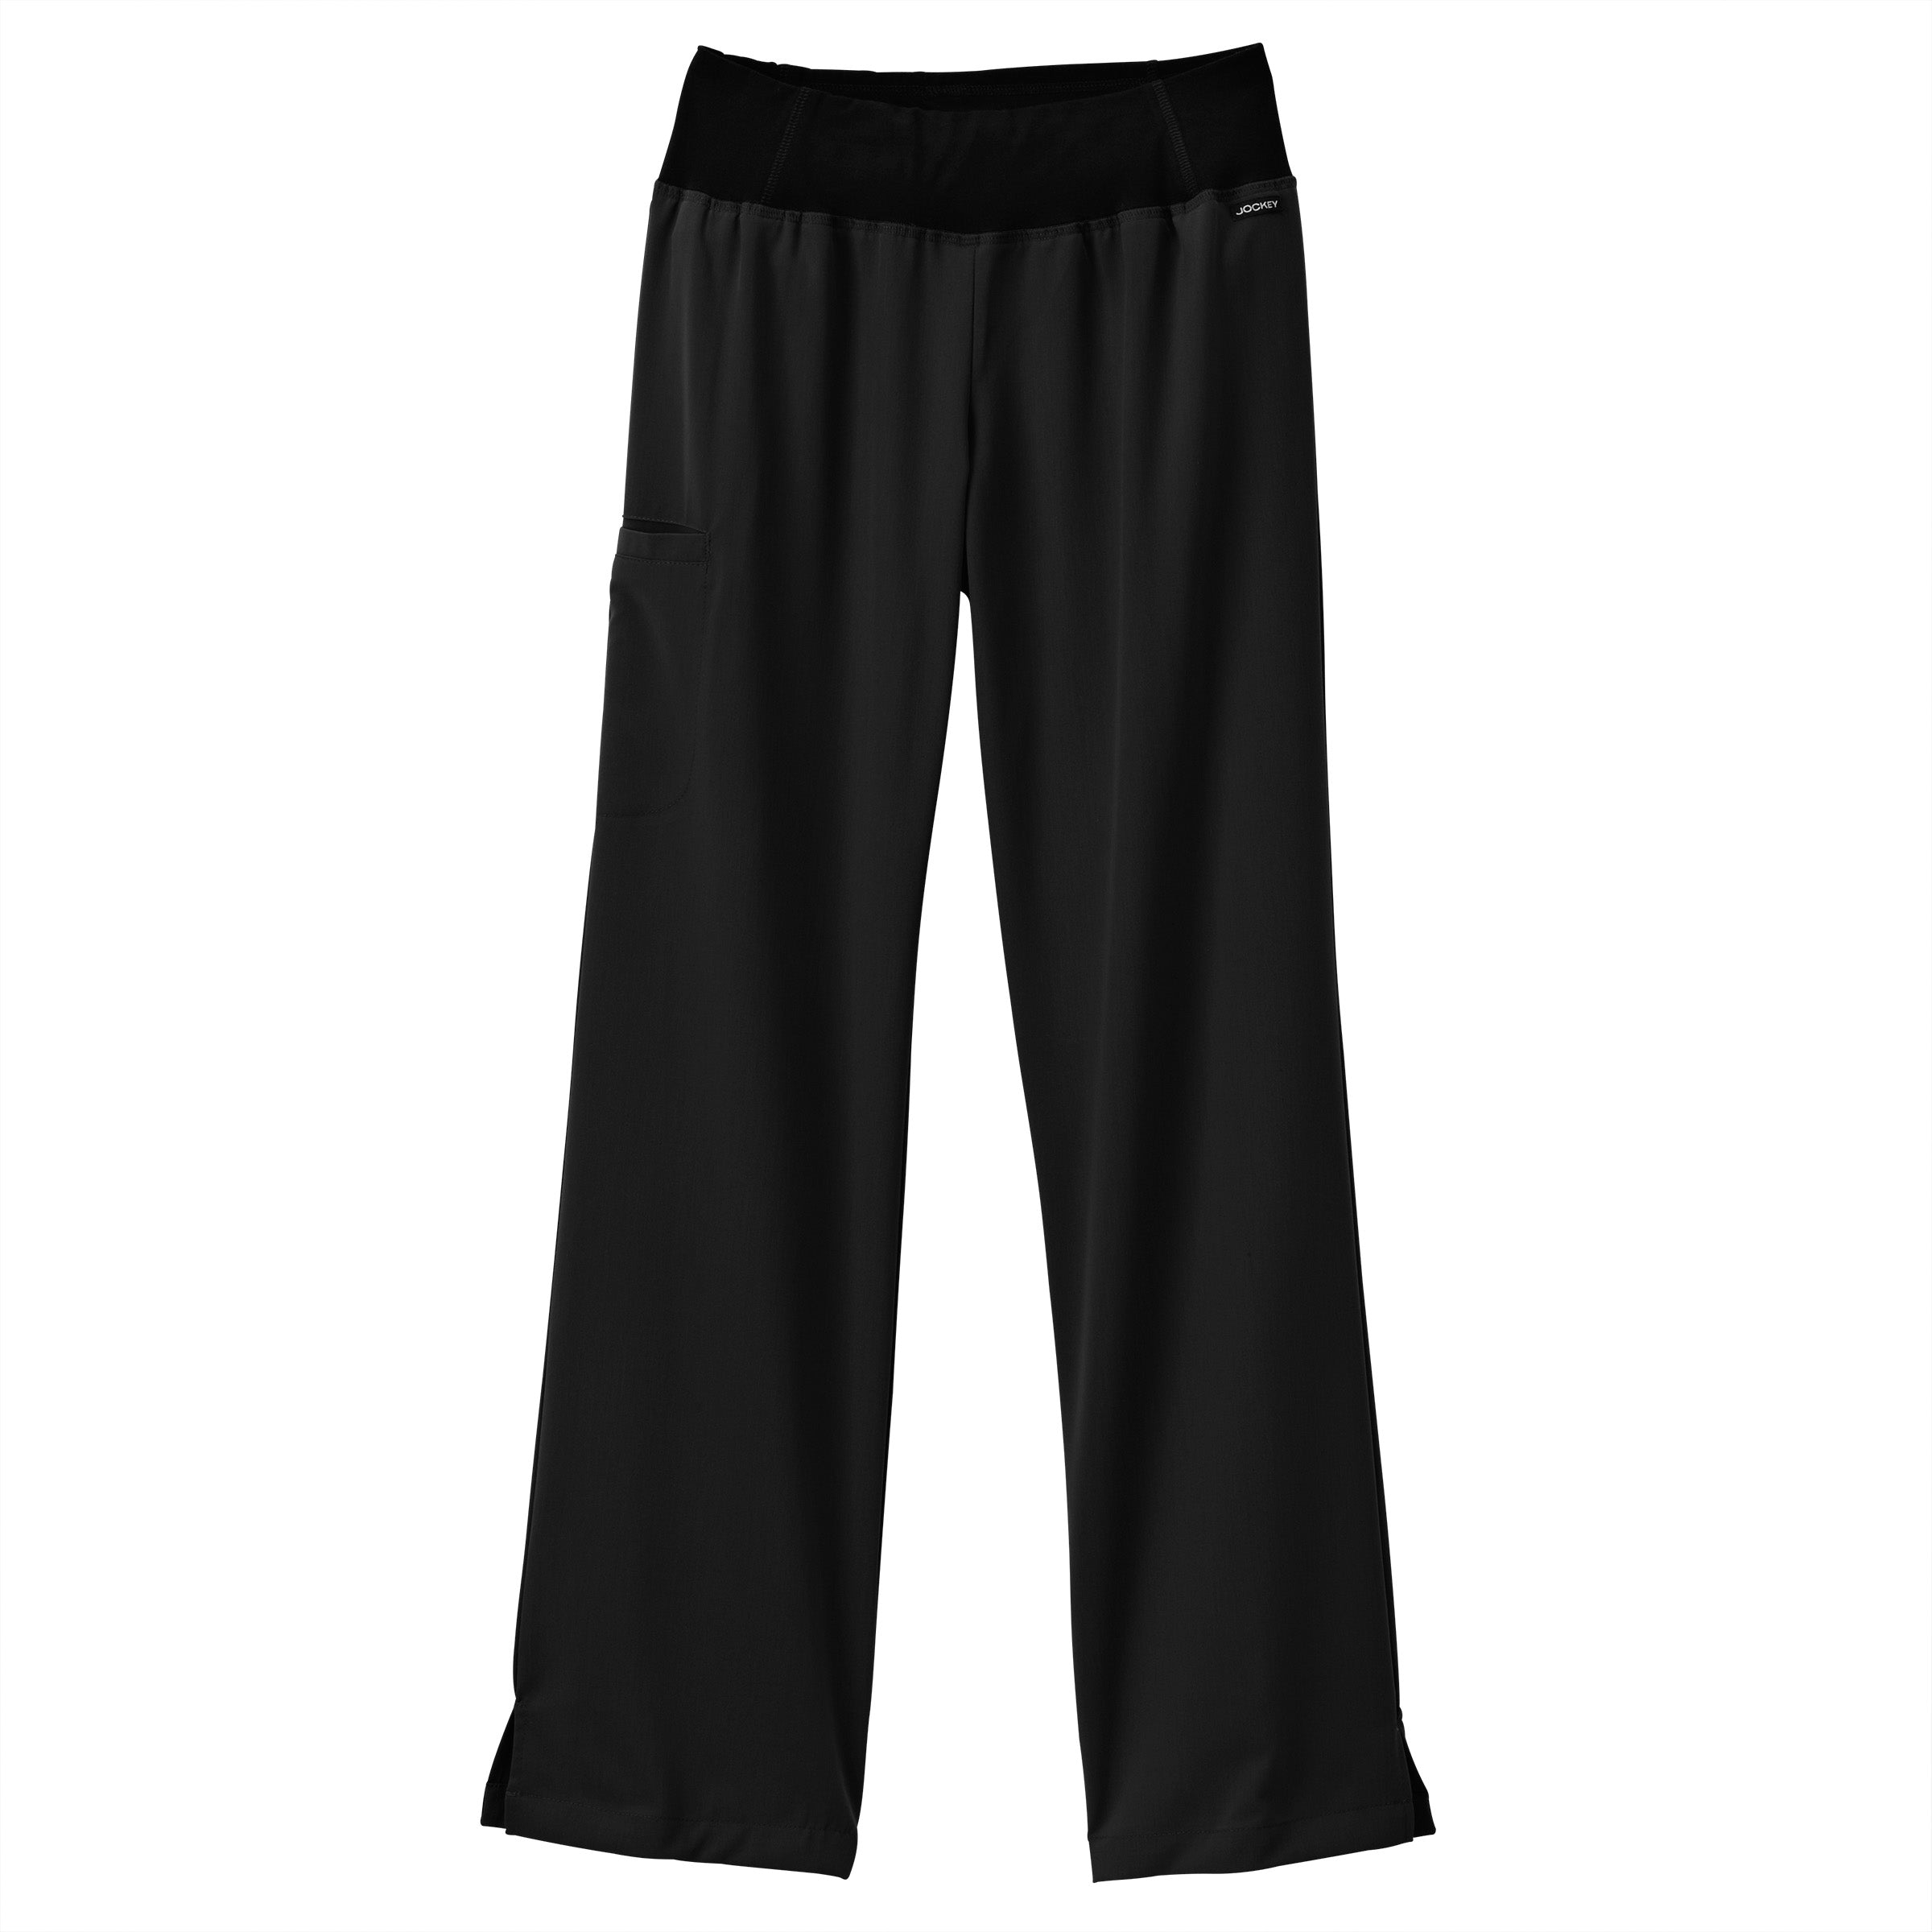 JOCKEY Solid Men Black Track Pants - Buy JOCKEY Solid Men Black Track Pants  Online at Best Prices in India | Flipkart.com